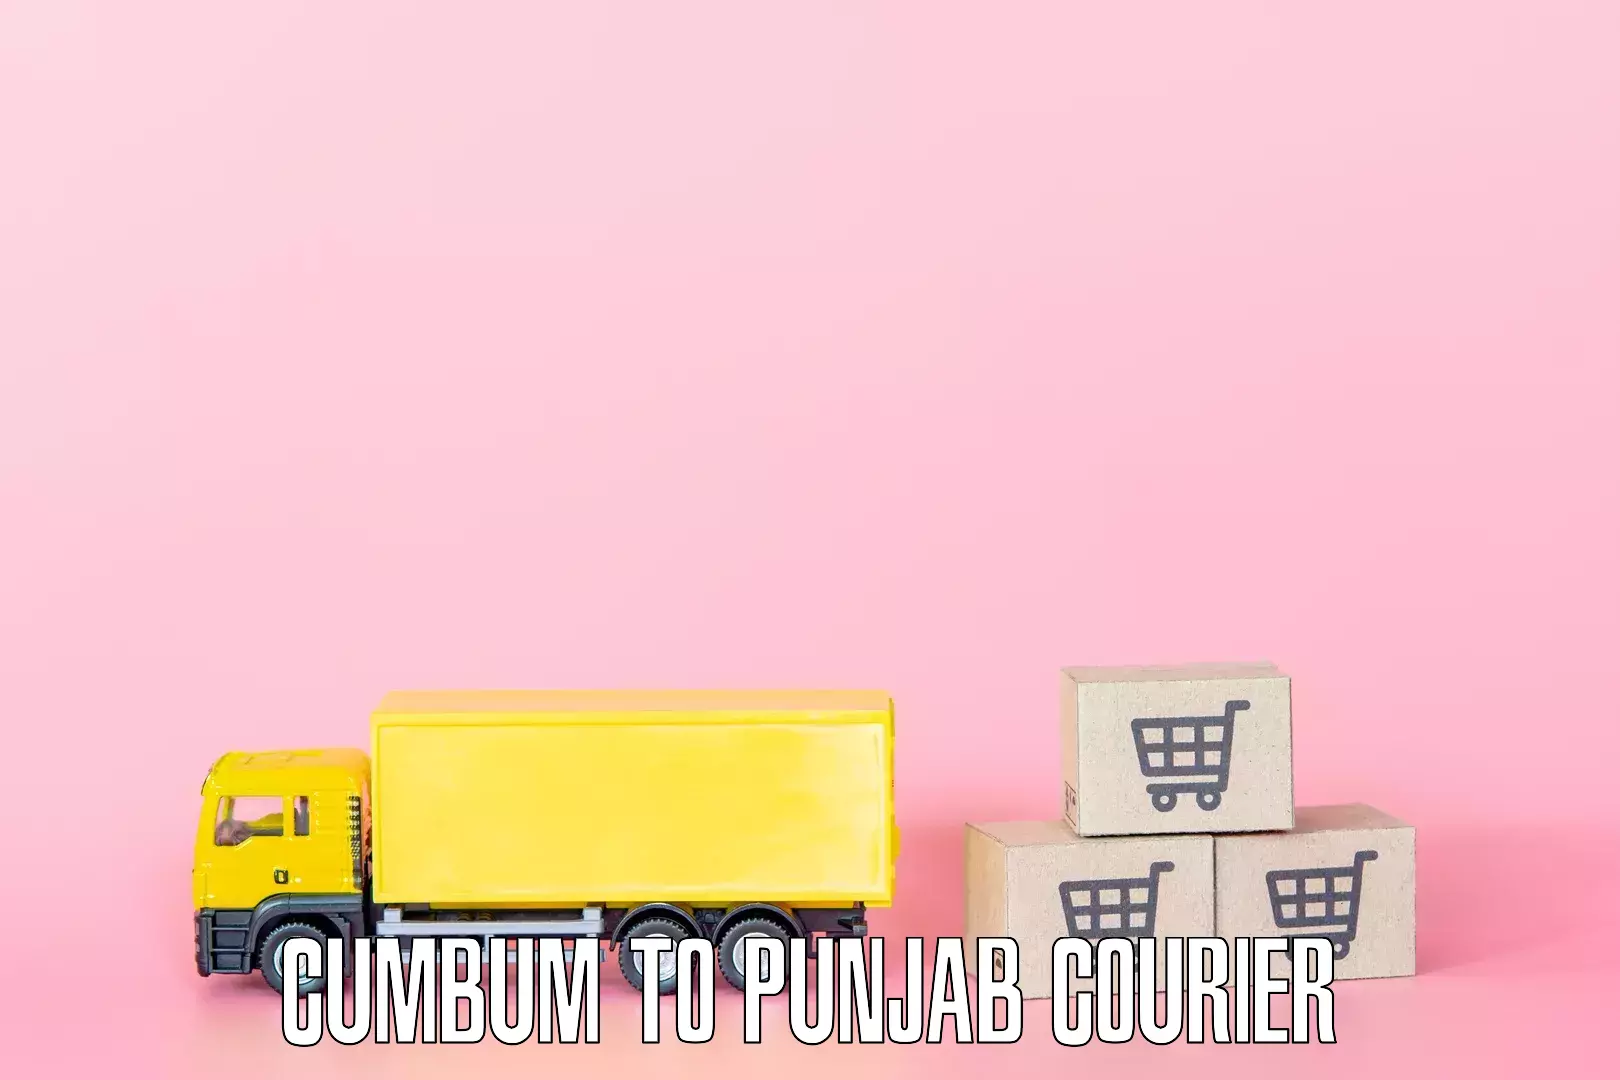 Furniture moving and handling Cumbum to Punjab